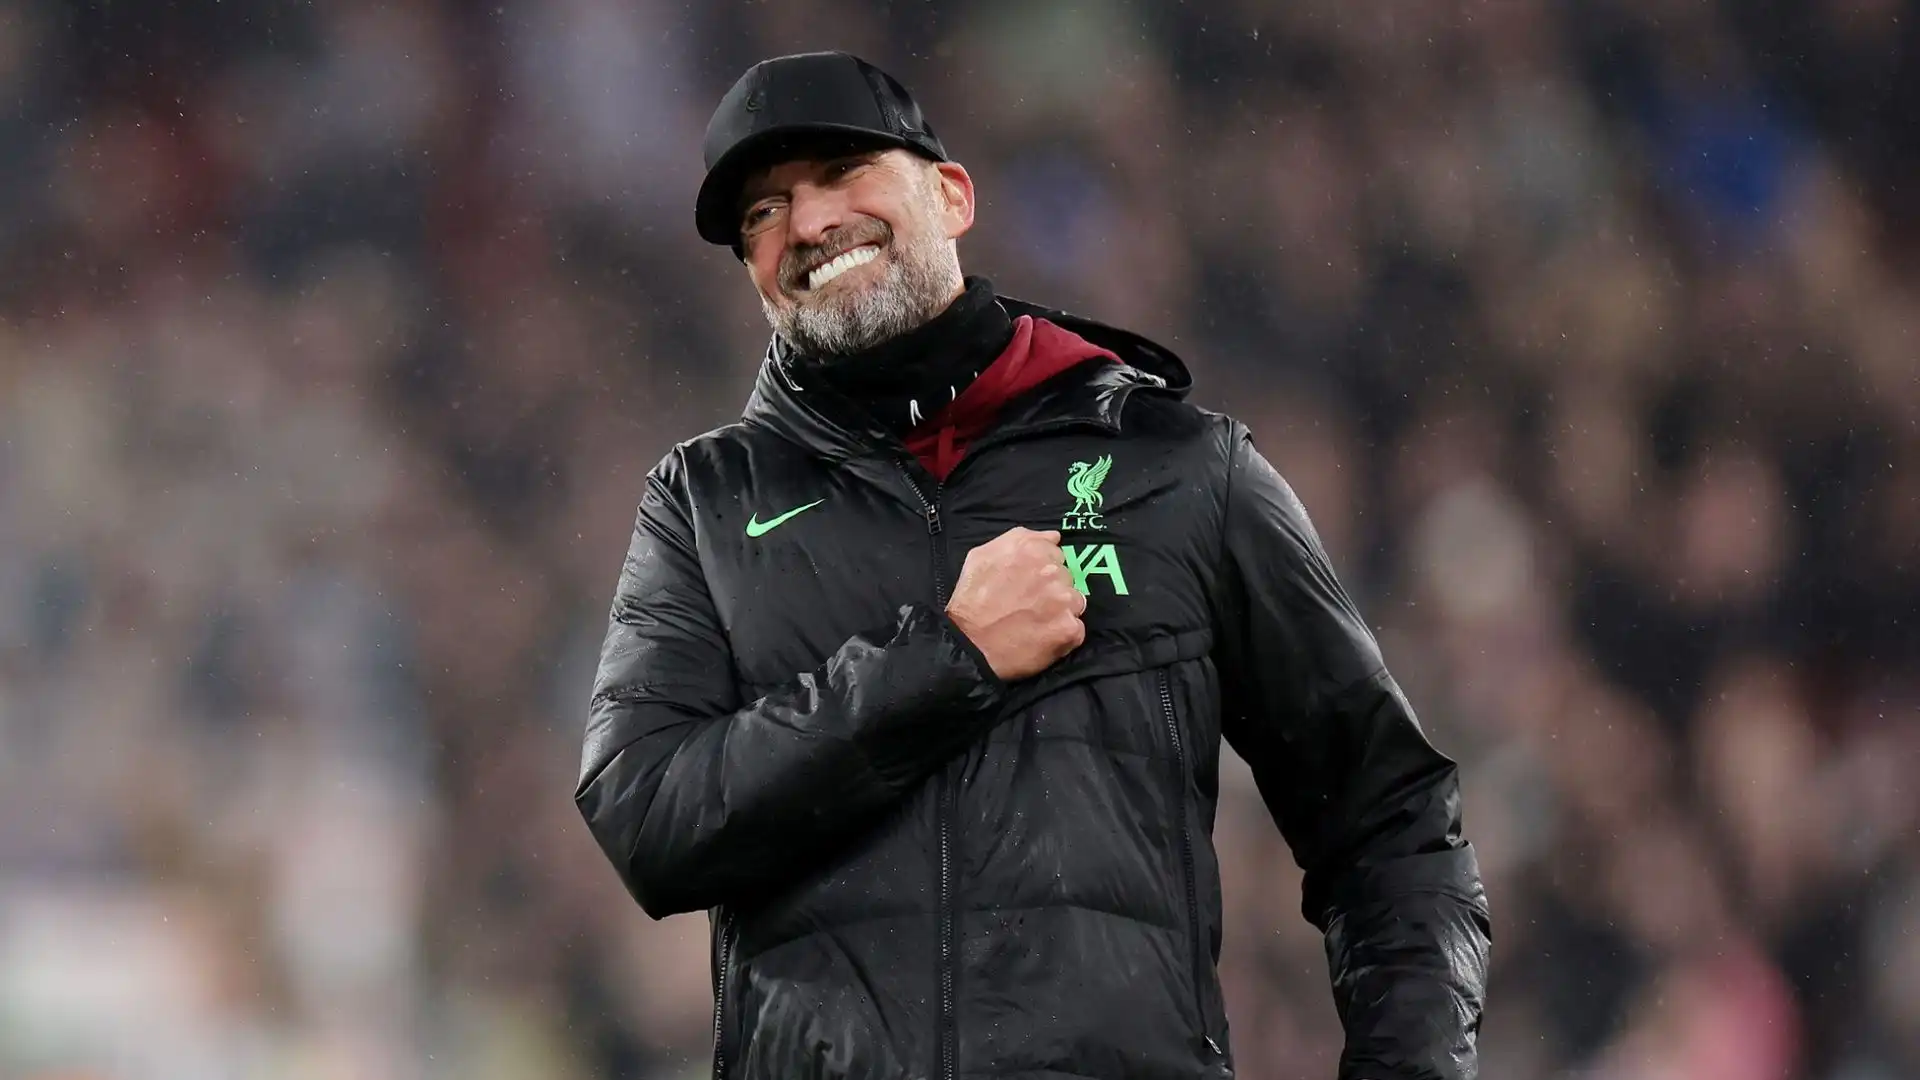 Il tecnico tedesco lascerà il Liverpool al termine della stagione, e sta decidendo in queste settimane il suo futuro